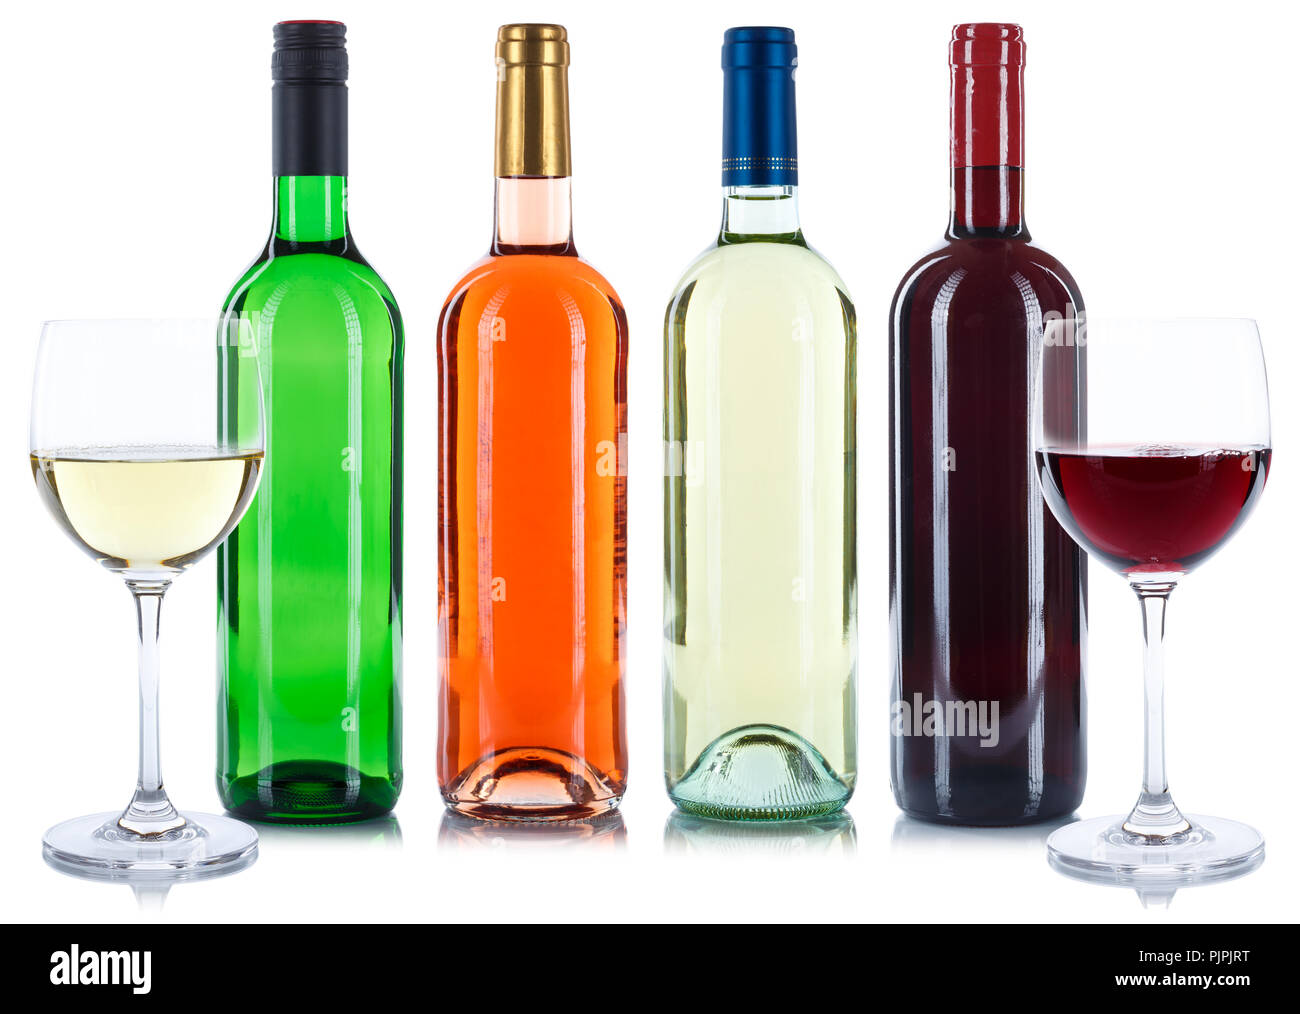 Rote und weiße Rose Wein Flaschen trinken Weine Sammlung auf weißem Hintergrund Stockfoto